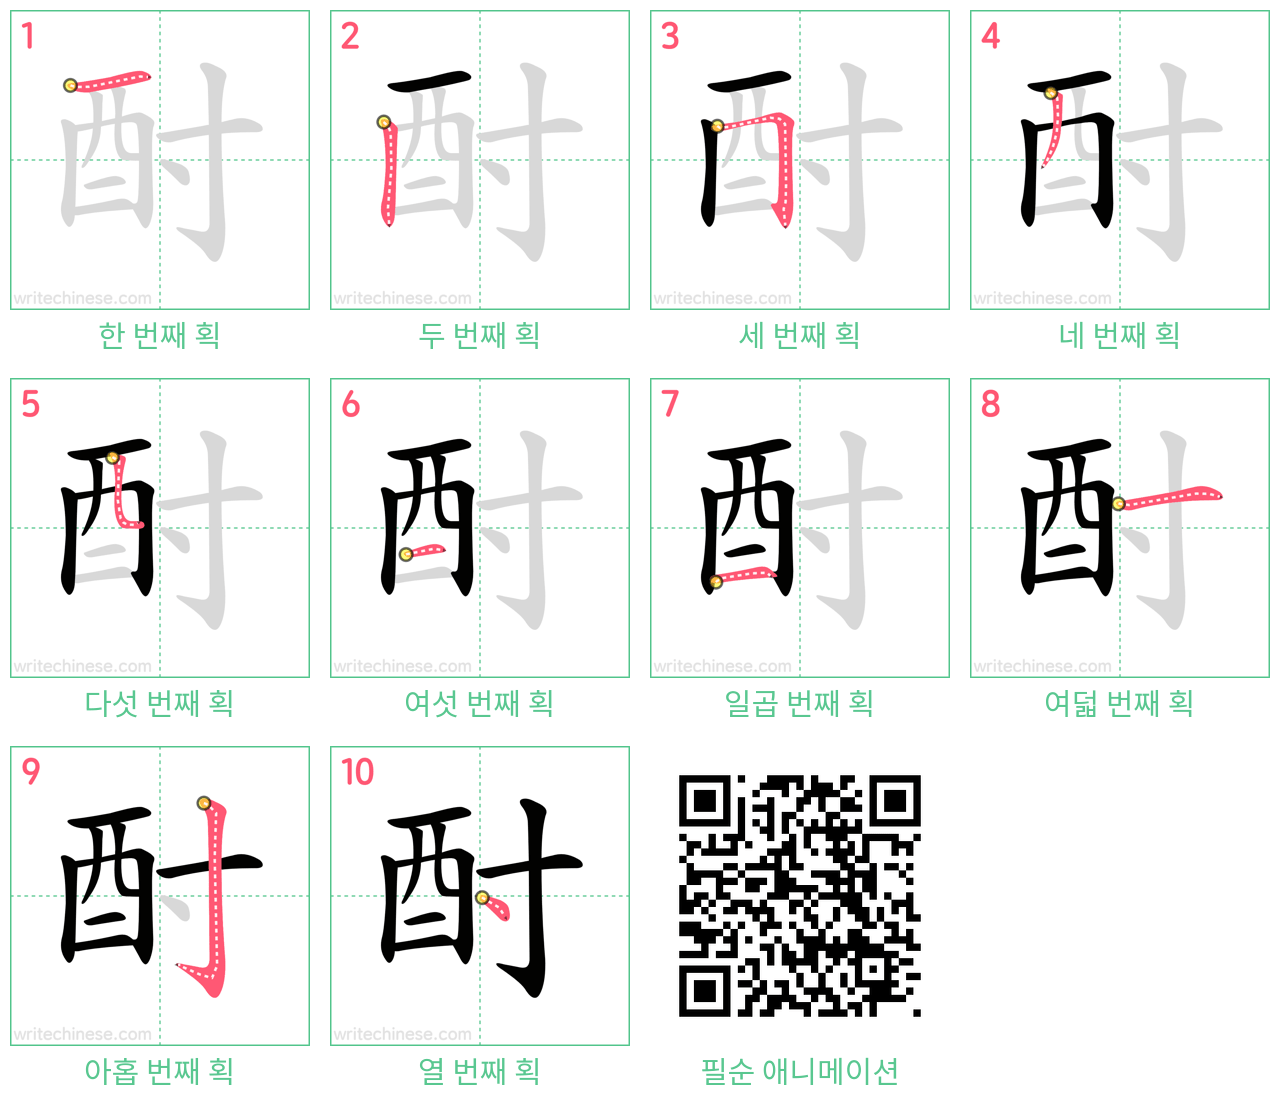 酎 step-by-step stroke order diagrams